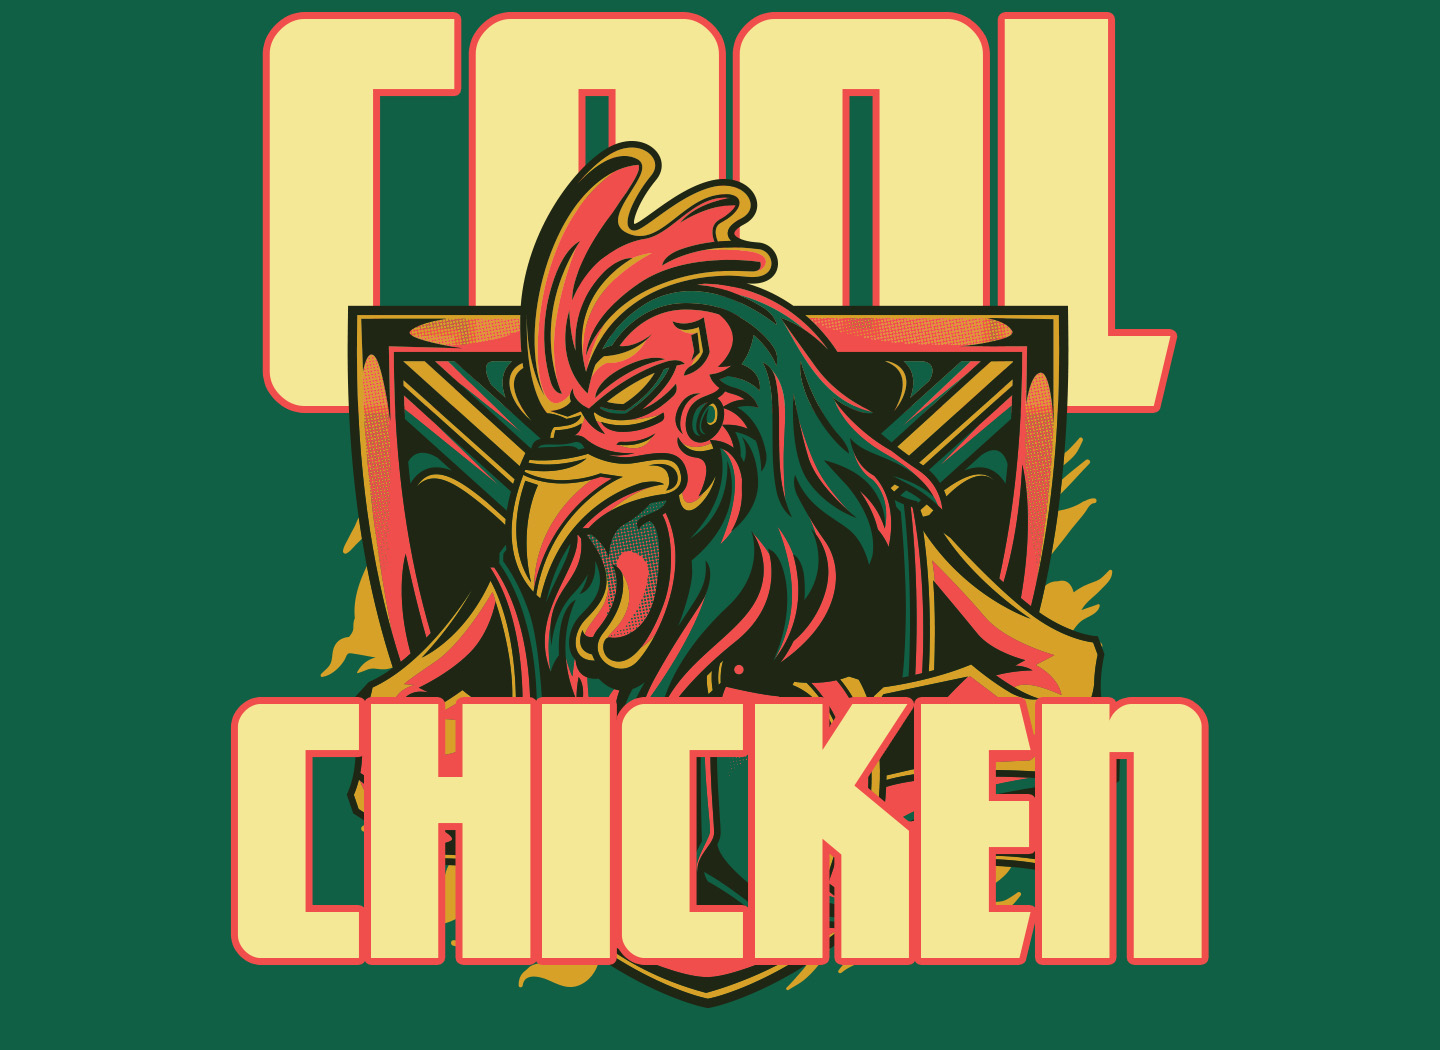 Cool Chicken